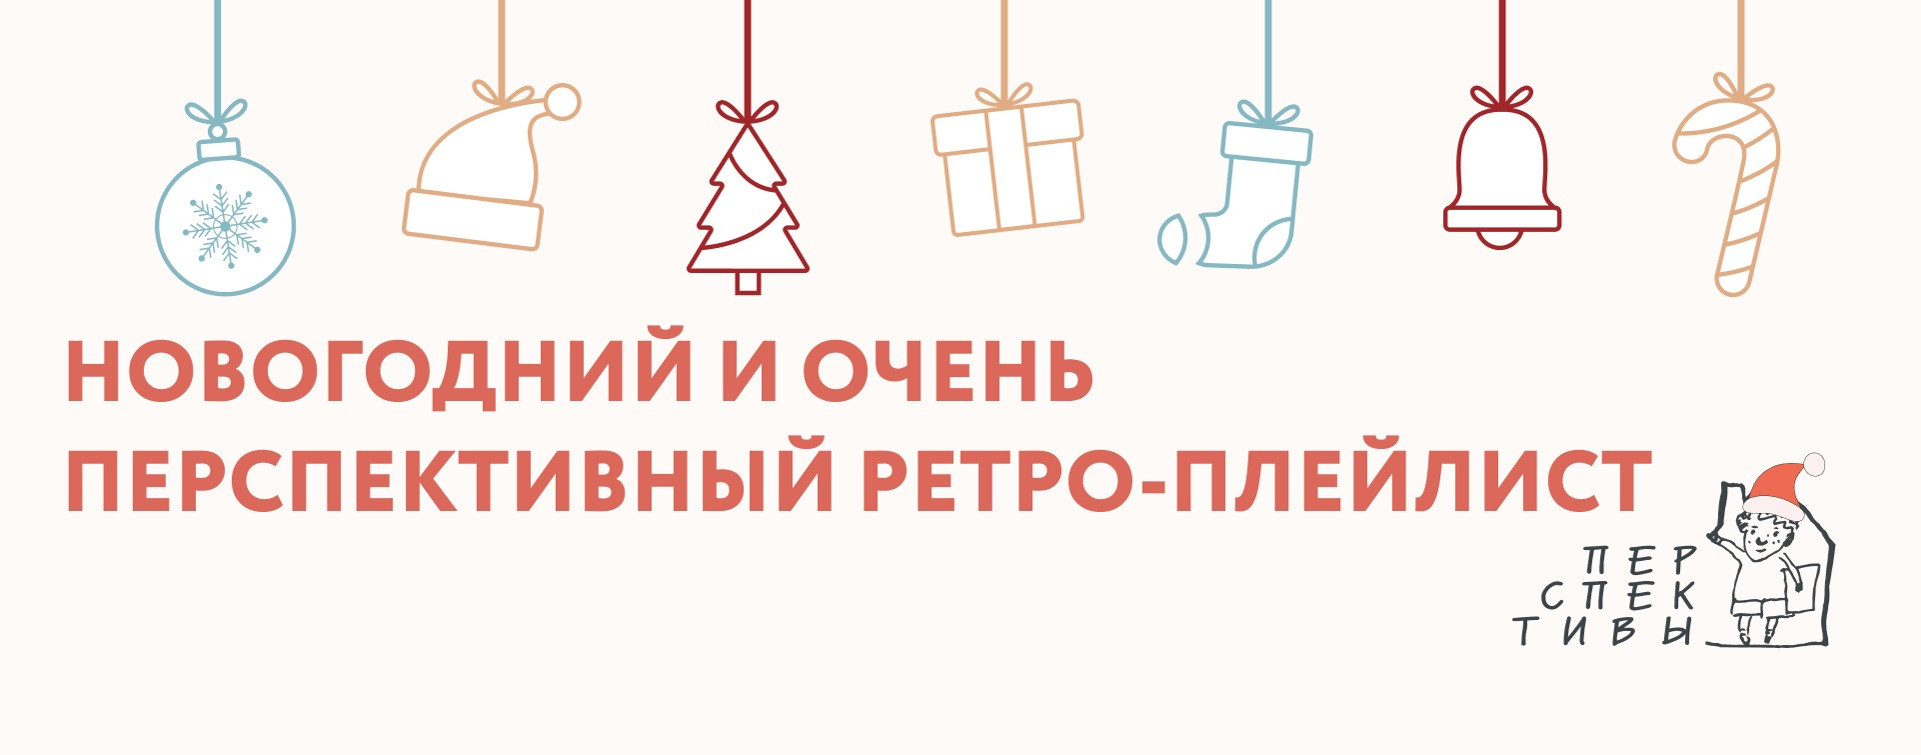 Анна Третьякова: Новогодний и очень перспективный ретро-плейлист